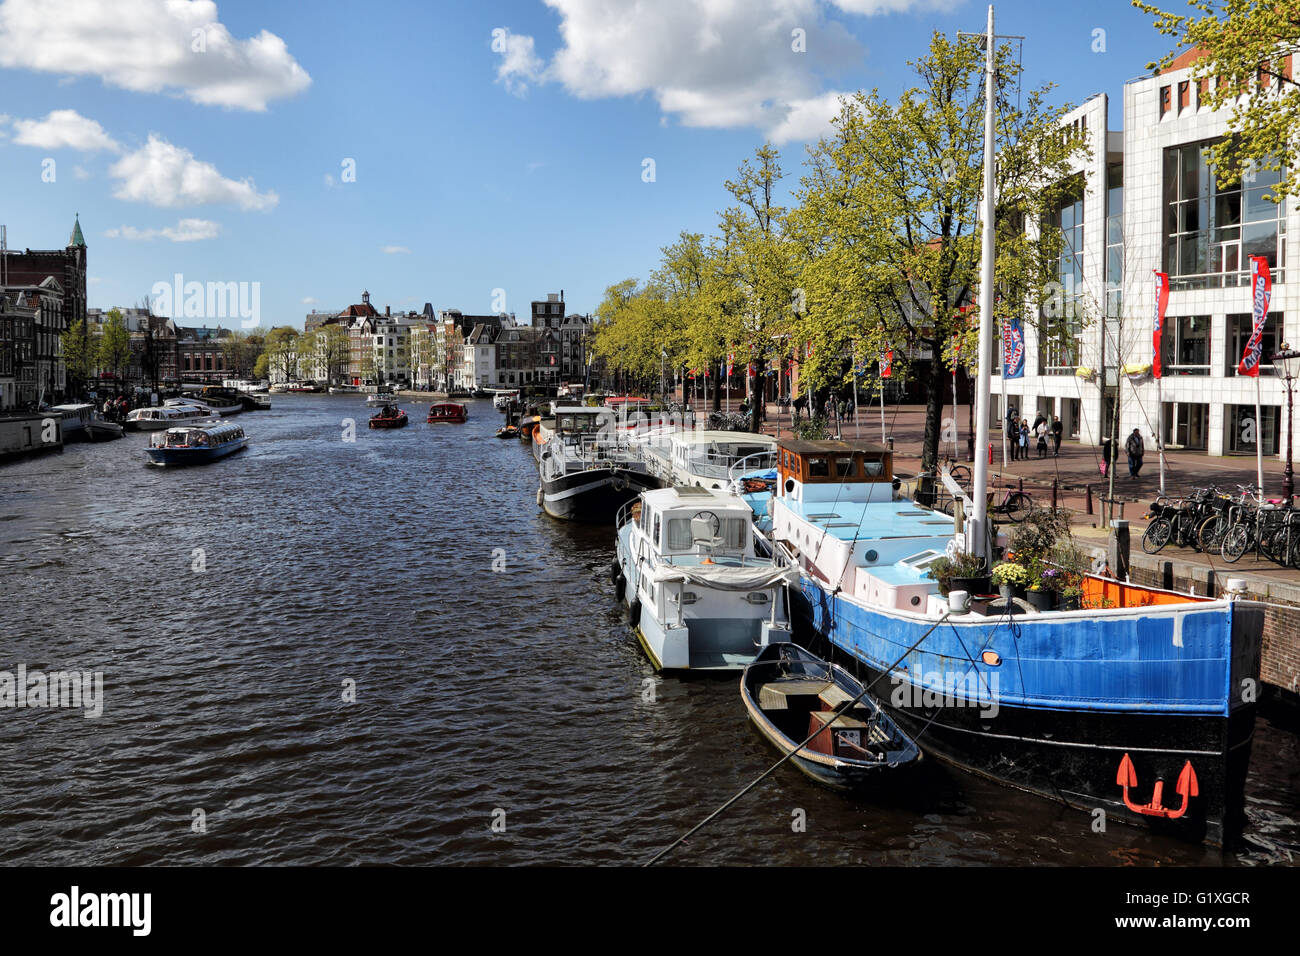 Vue sur la rivière Amstel dans le centre-ville d'Amsterdam, Pays-Bas, Europe. Banque D'Images